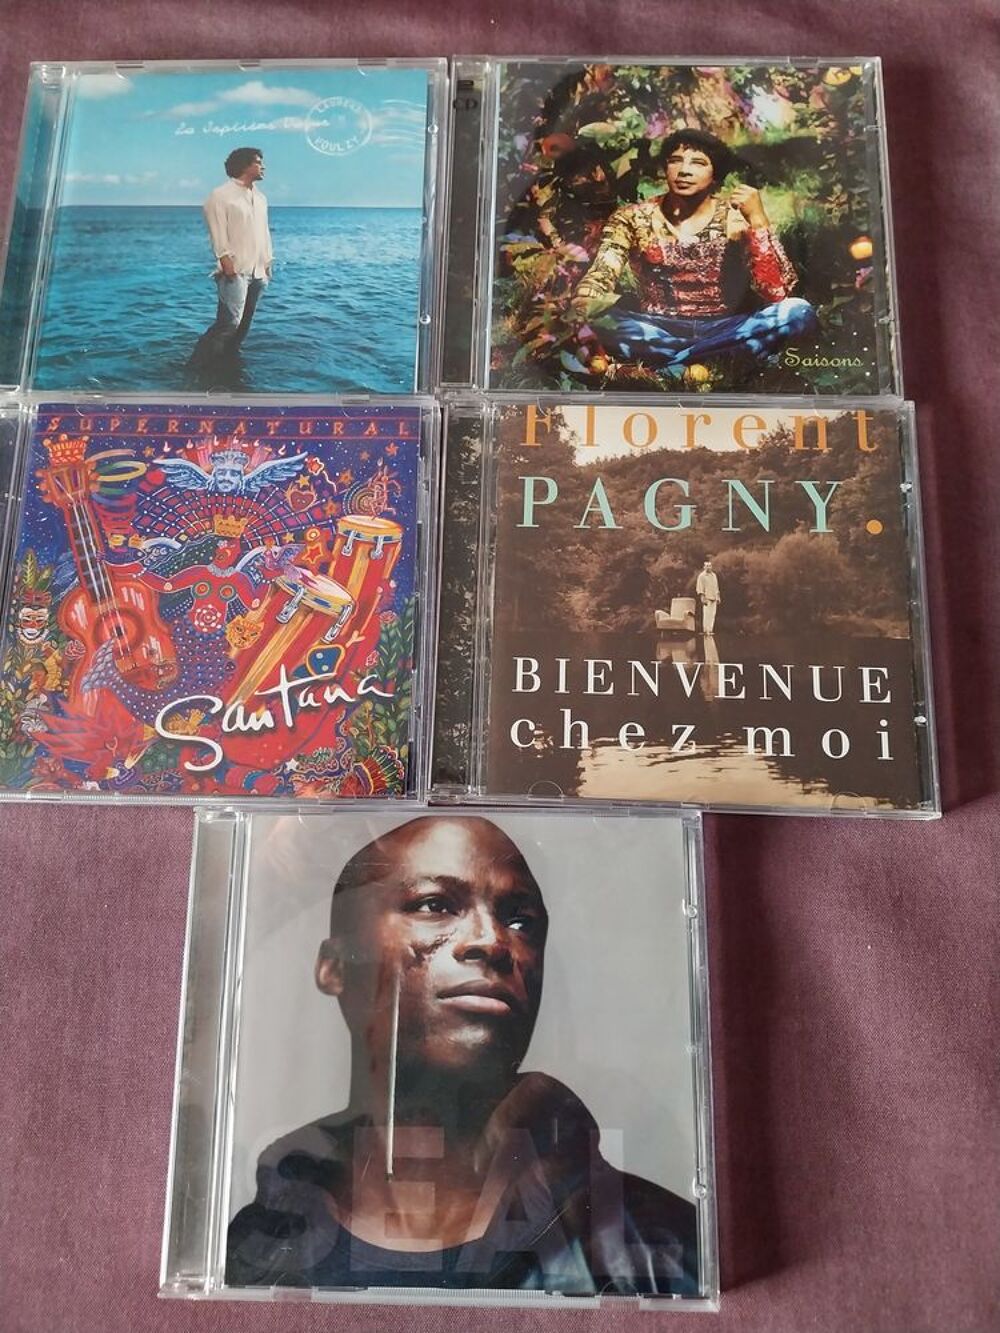 MUSIQUE : 5 CD
CD et vinyles